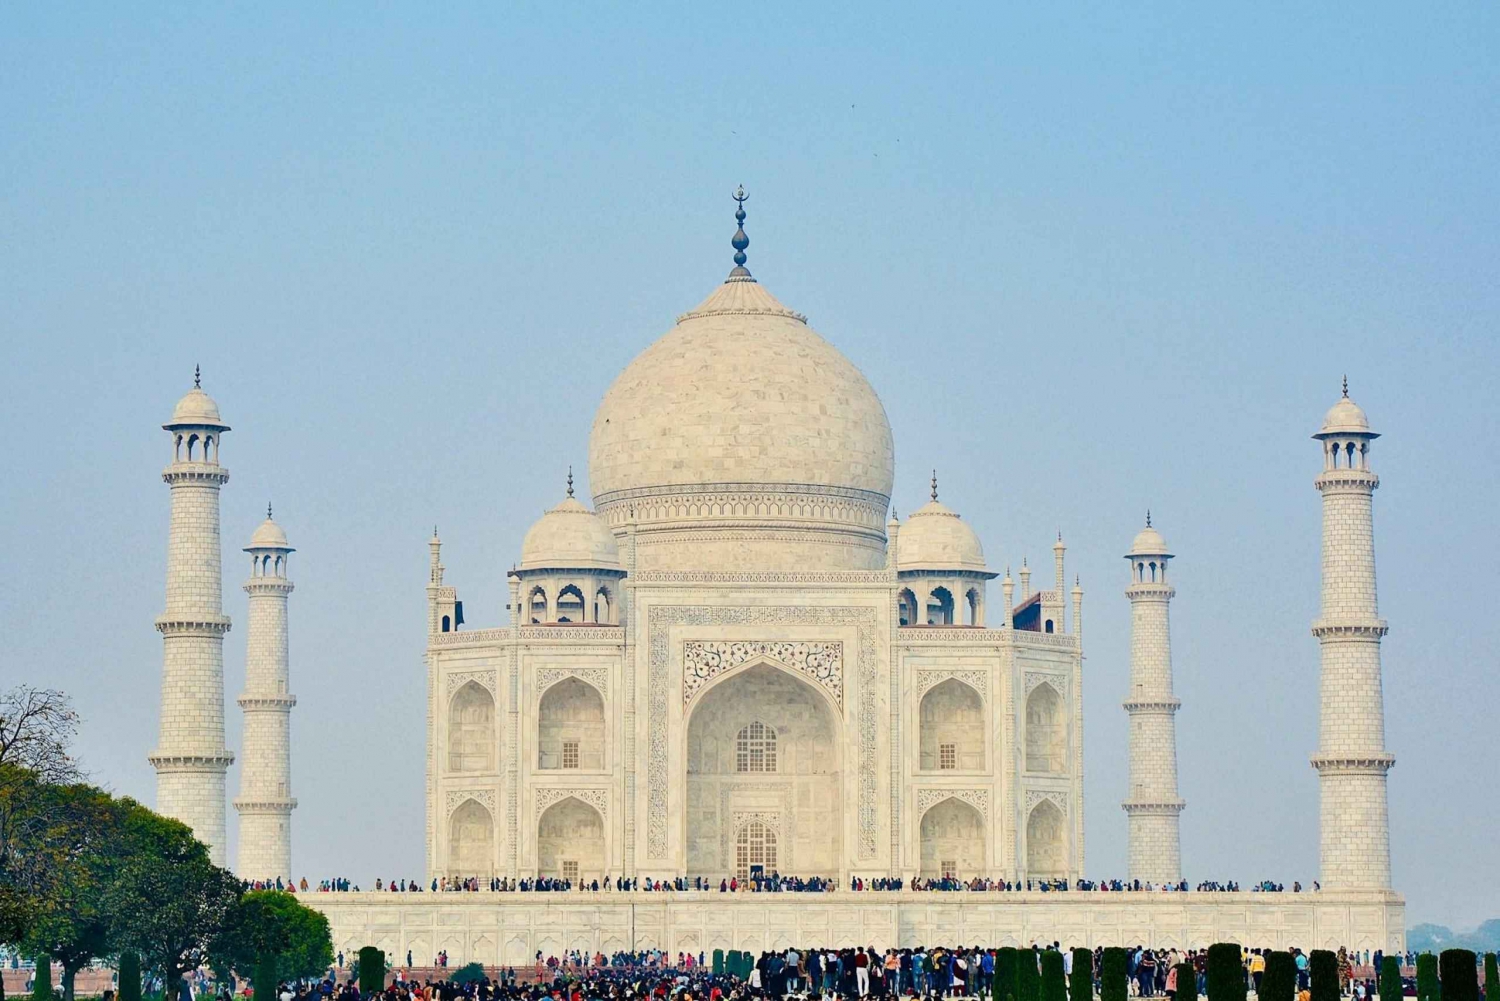 Biglietti d'ingresso prioritari per il Taj Mahal con opzioni extra